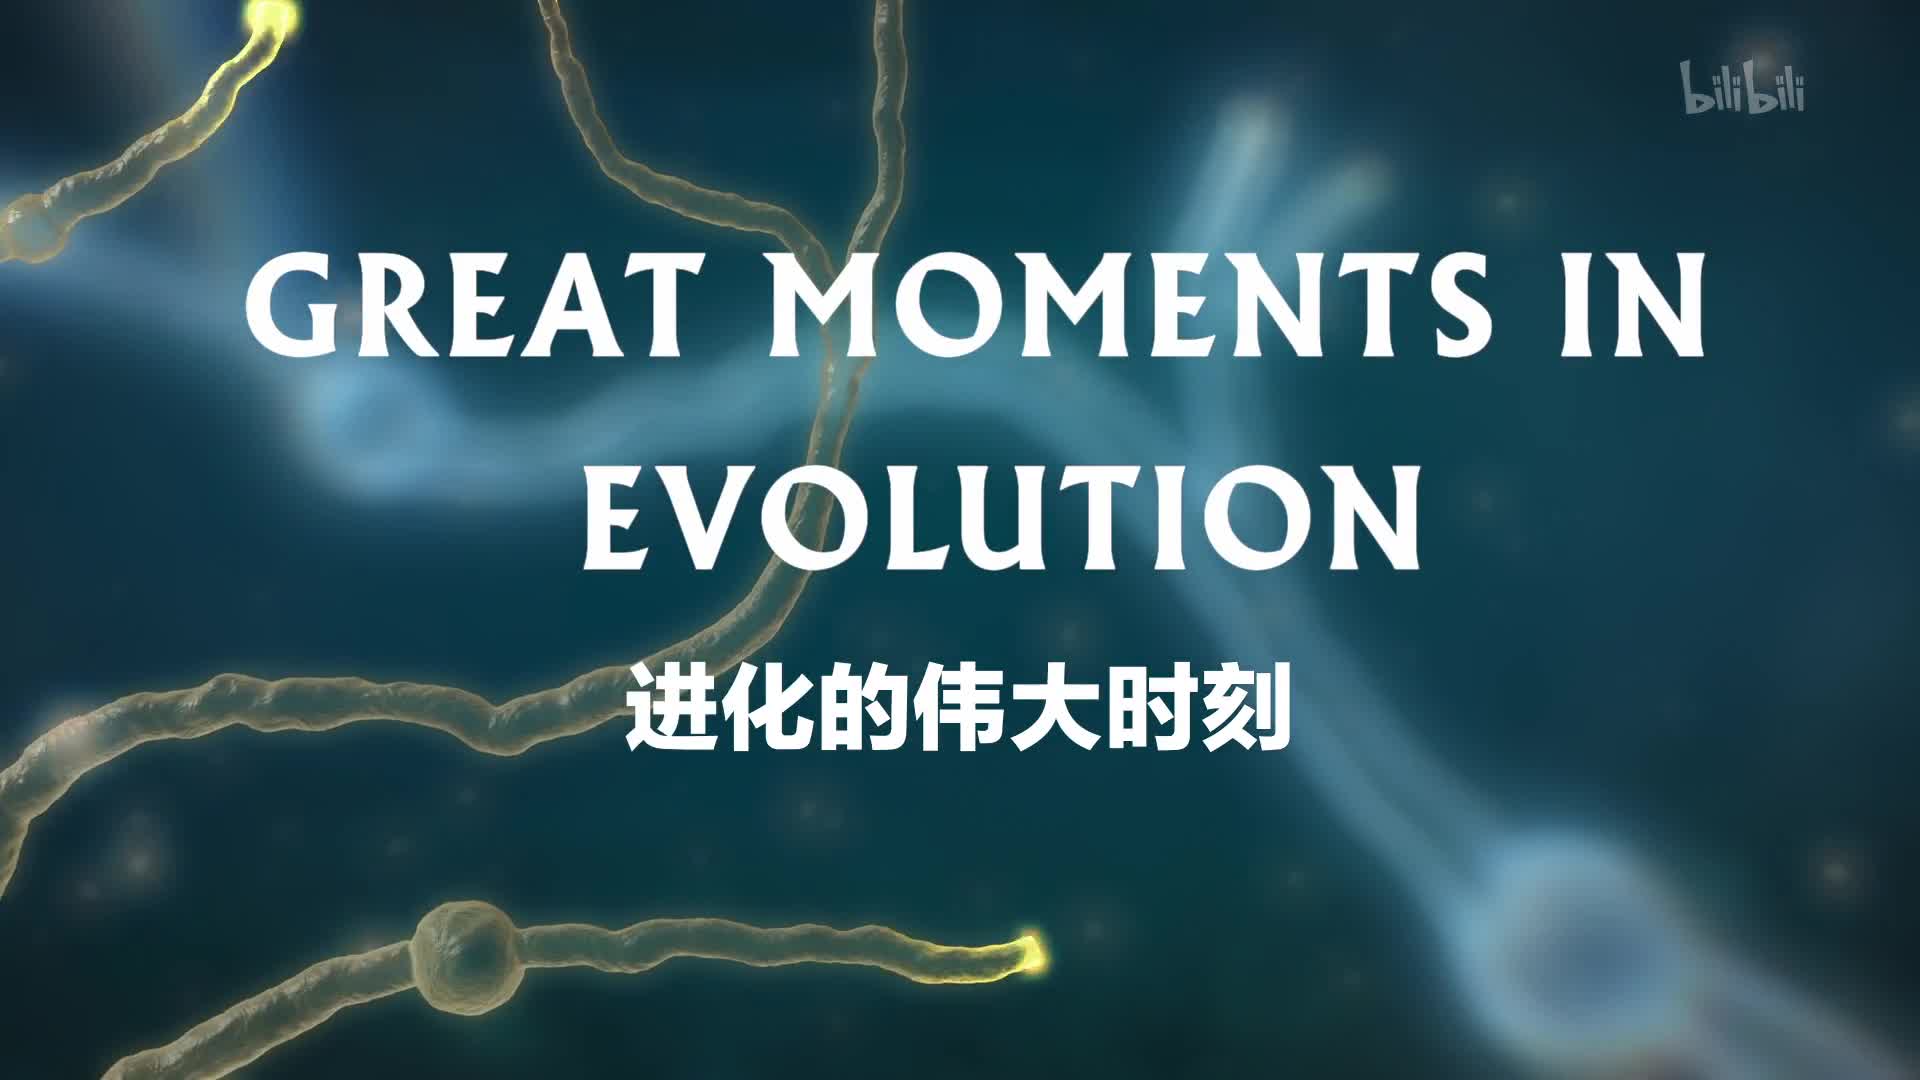 【纪录片】进化的伟大时刻-Great Moments in Evolution